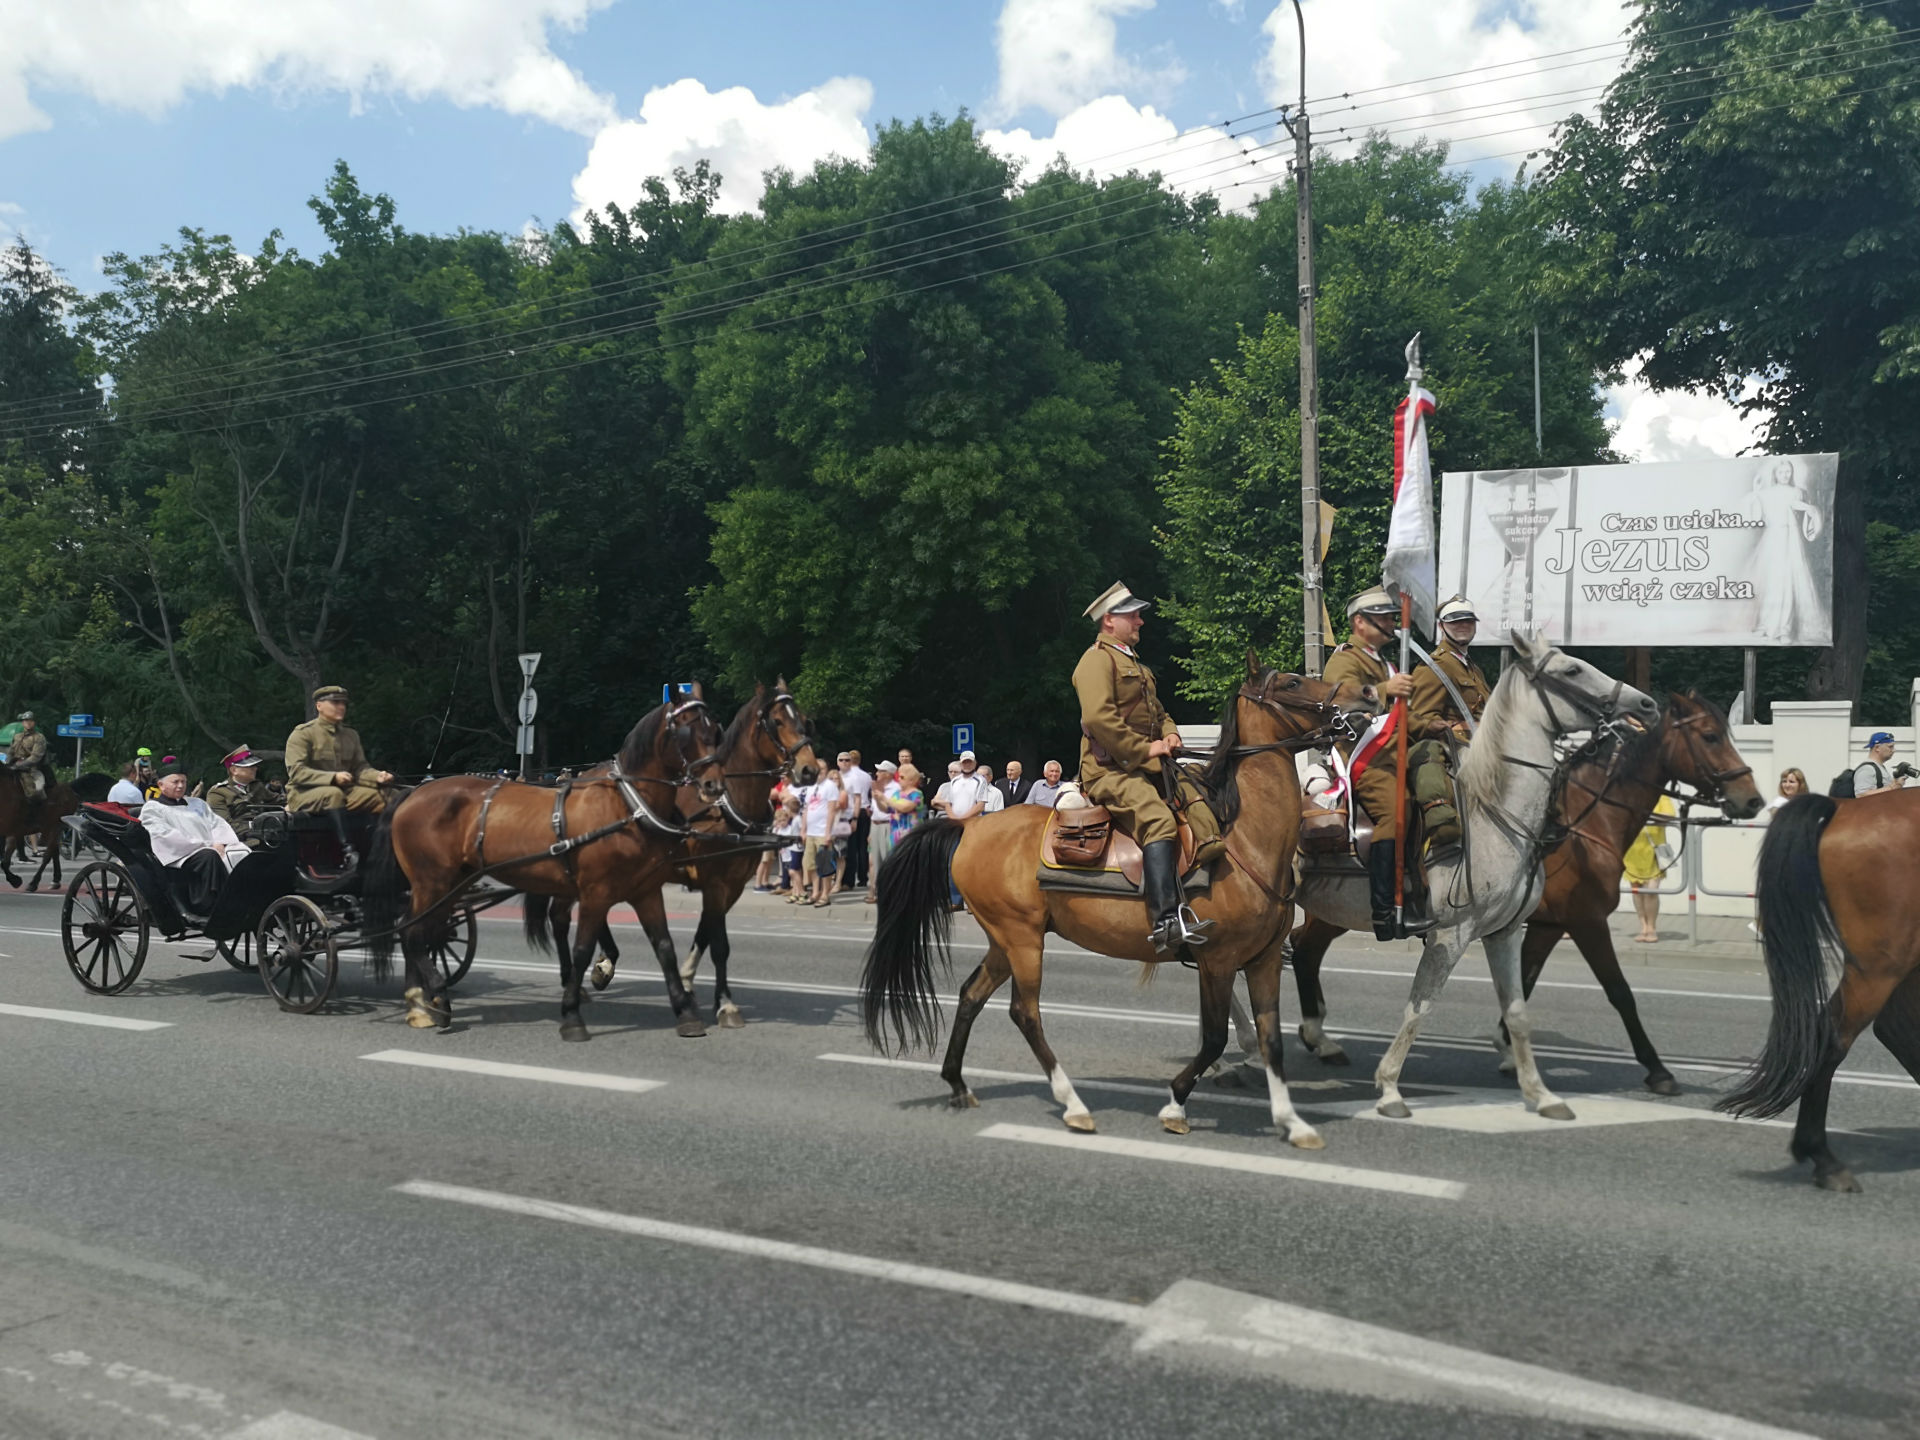 Parada z okazji obchodów 100-lecia przybycia 7 Pułku Ułanów Lubelskich do Mińska Mazowieckiego. Ulicą miasta jadą konno żołnierze ubrani w historyczne, zielone mundury oraz rogatywki z białym paskiem. Za nimi, w dorożce prowadzonej przez dwa konie siedzi osoba duchowna w towarzystwie dwóch żołnierzy.